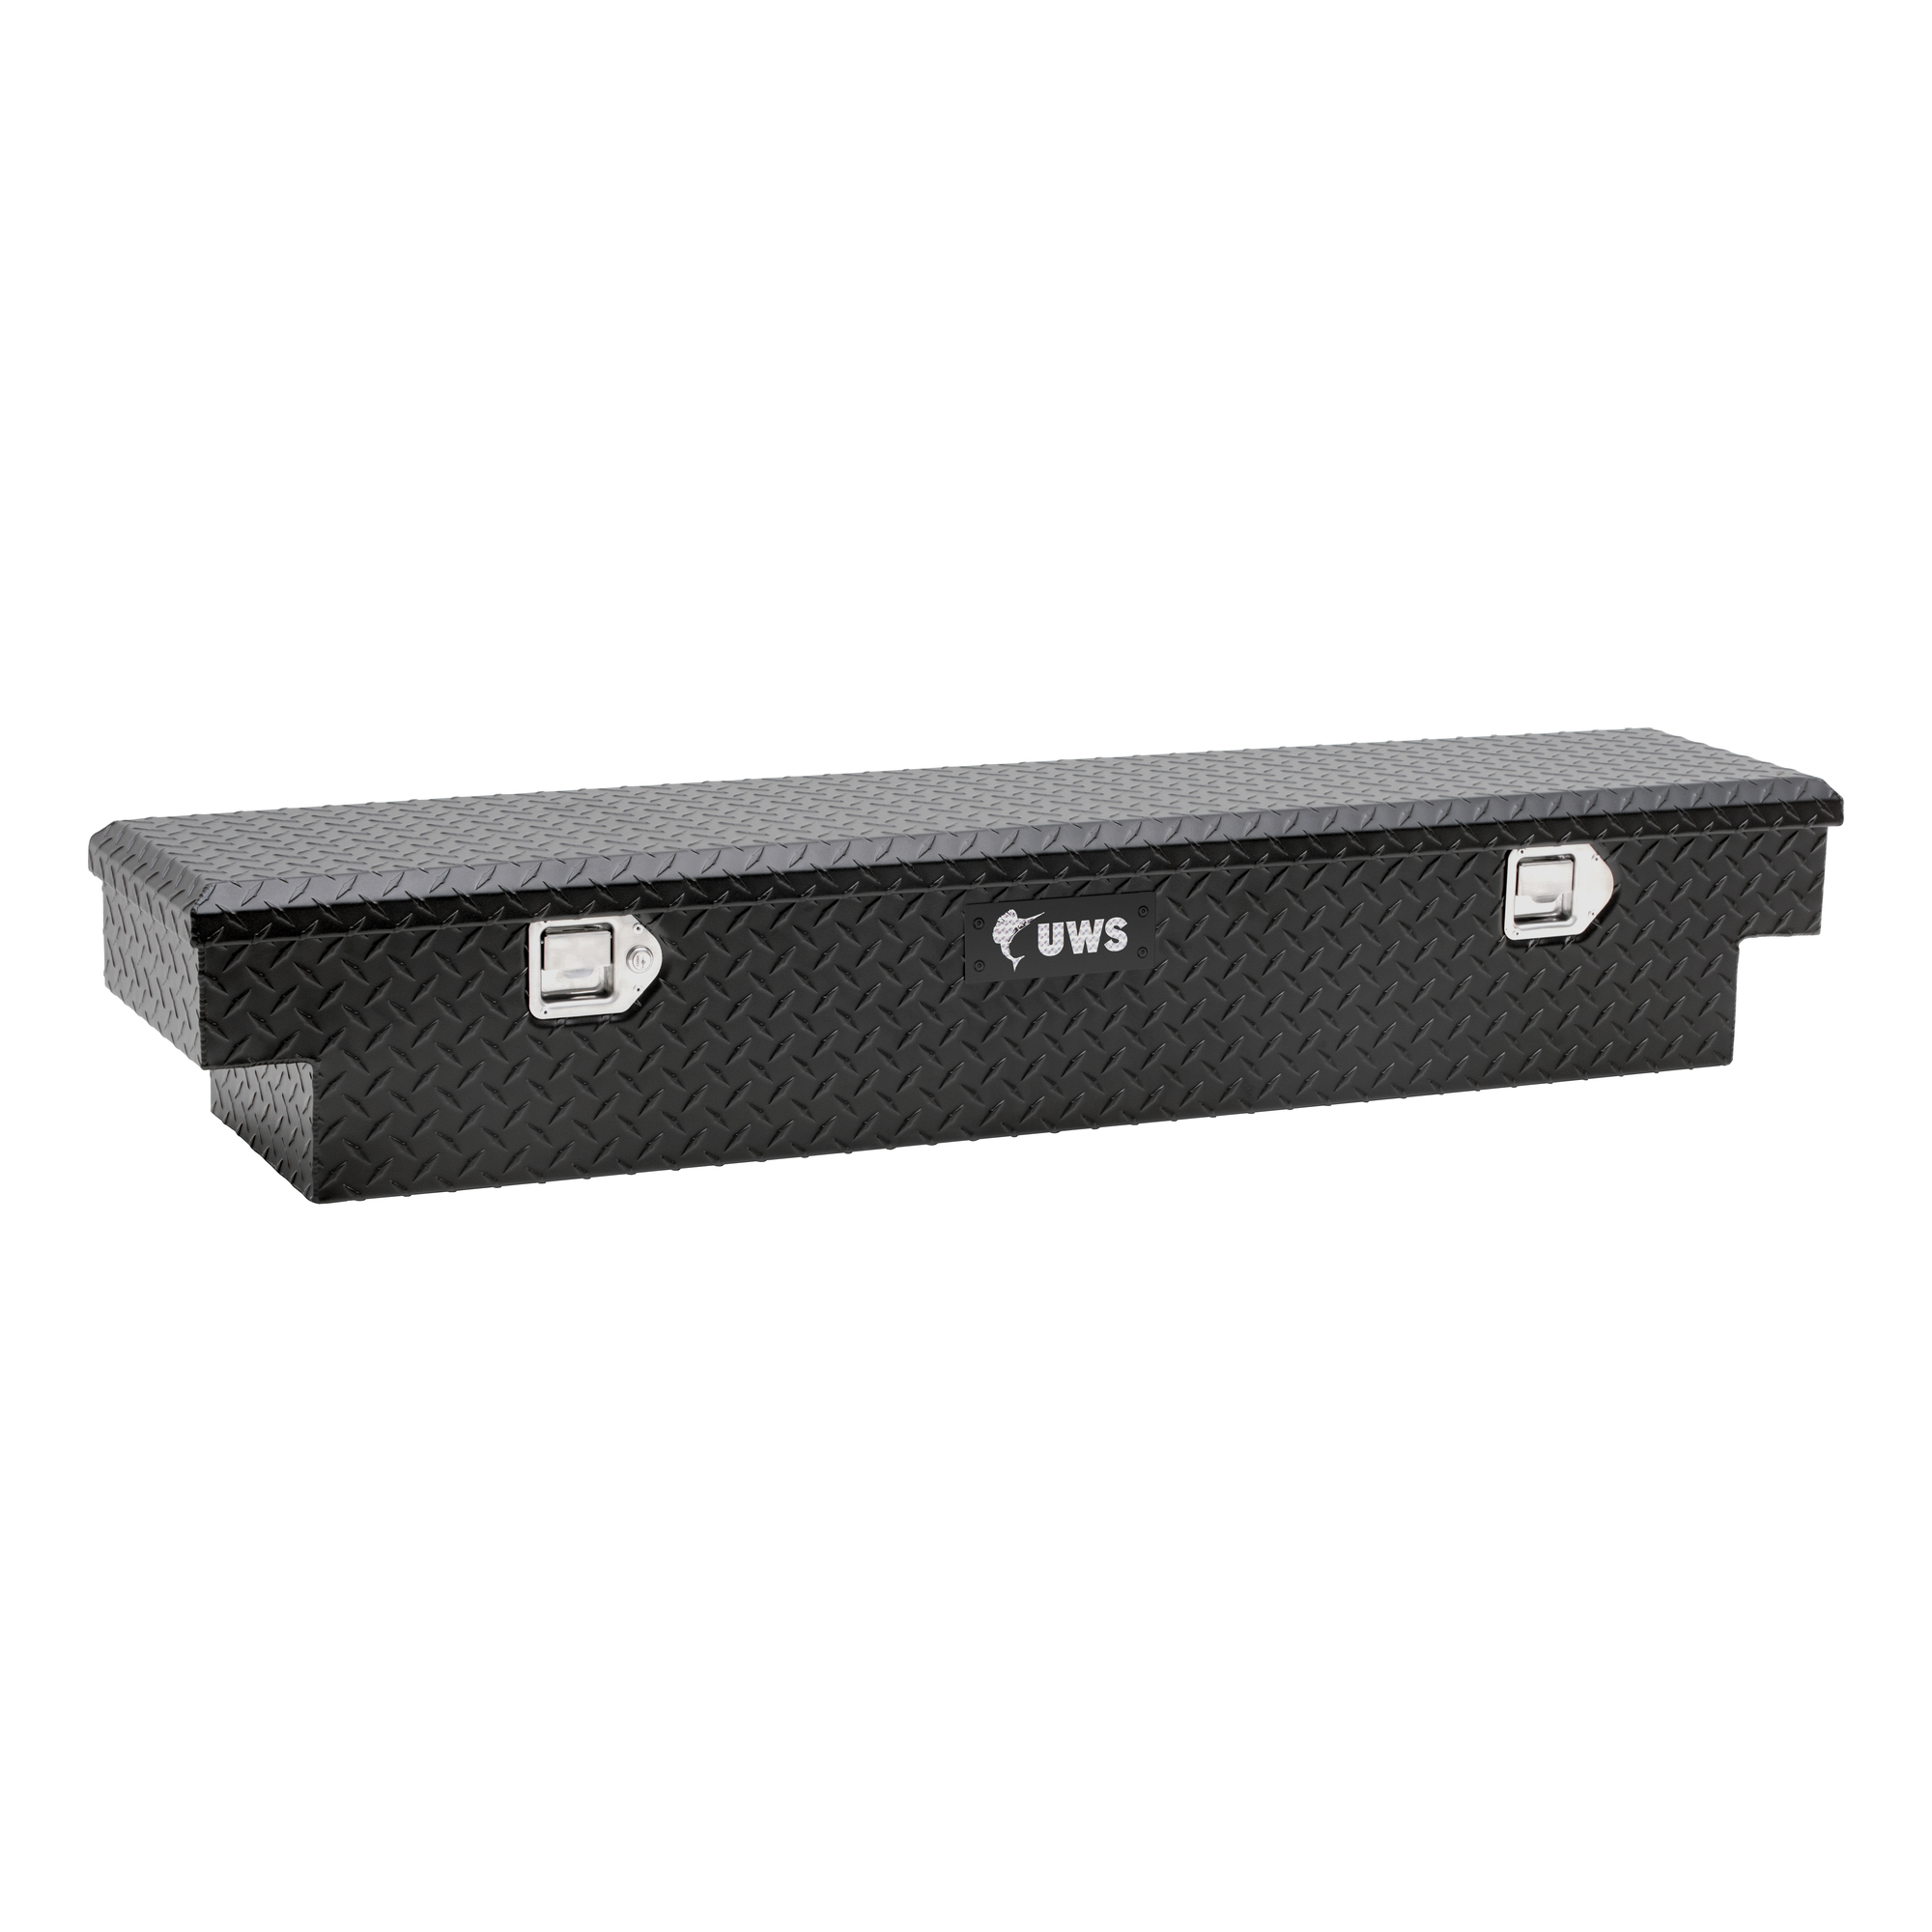 UWS, UTV Tool Box - Polaris (No Brackets), Model EC10903